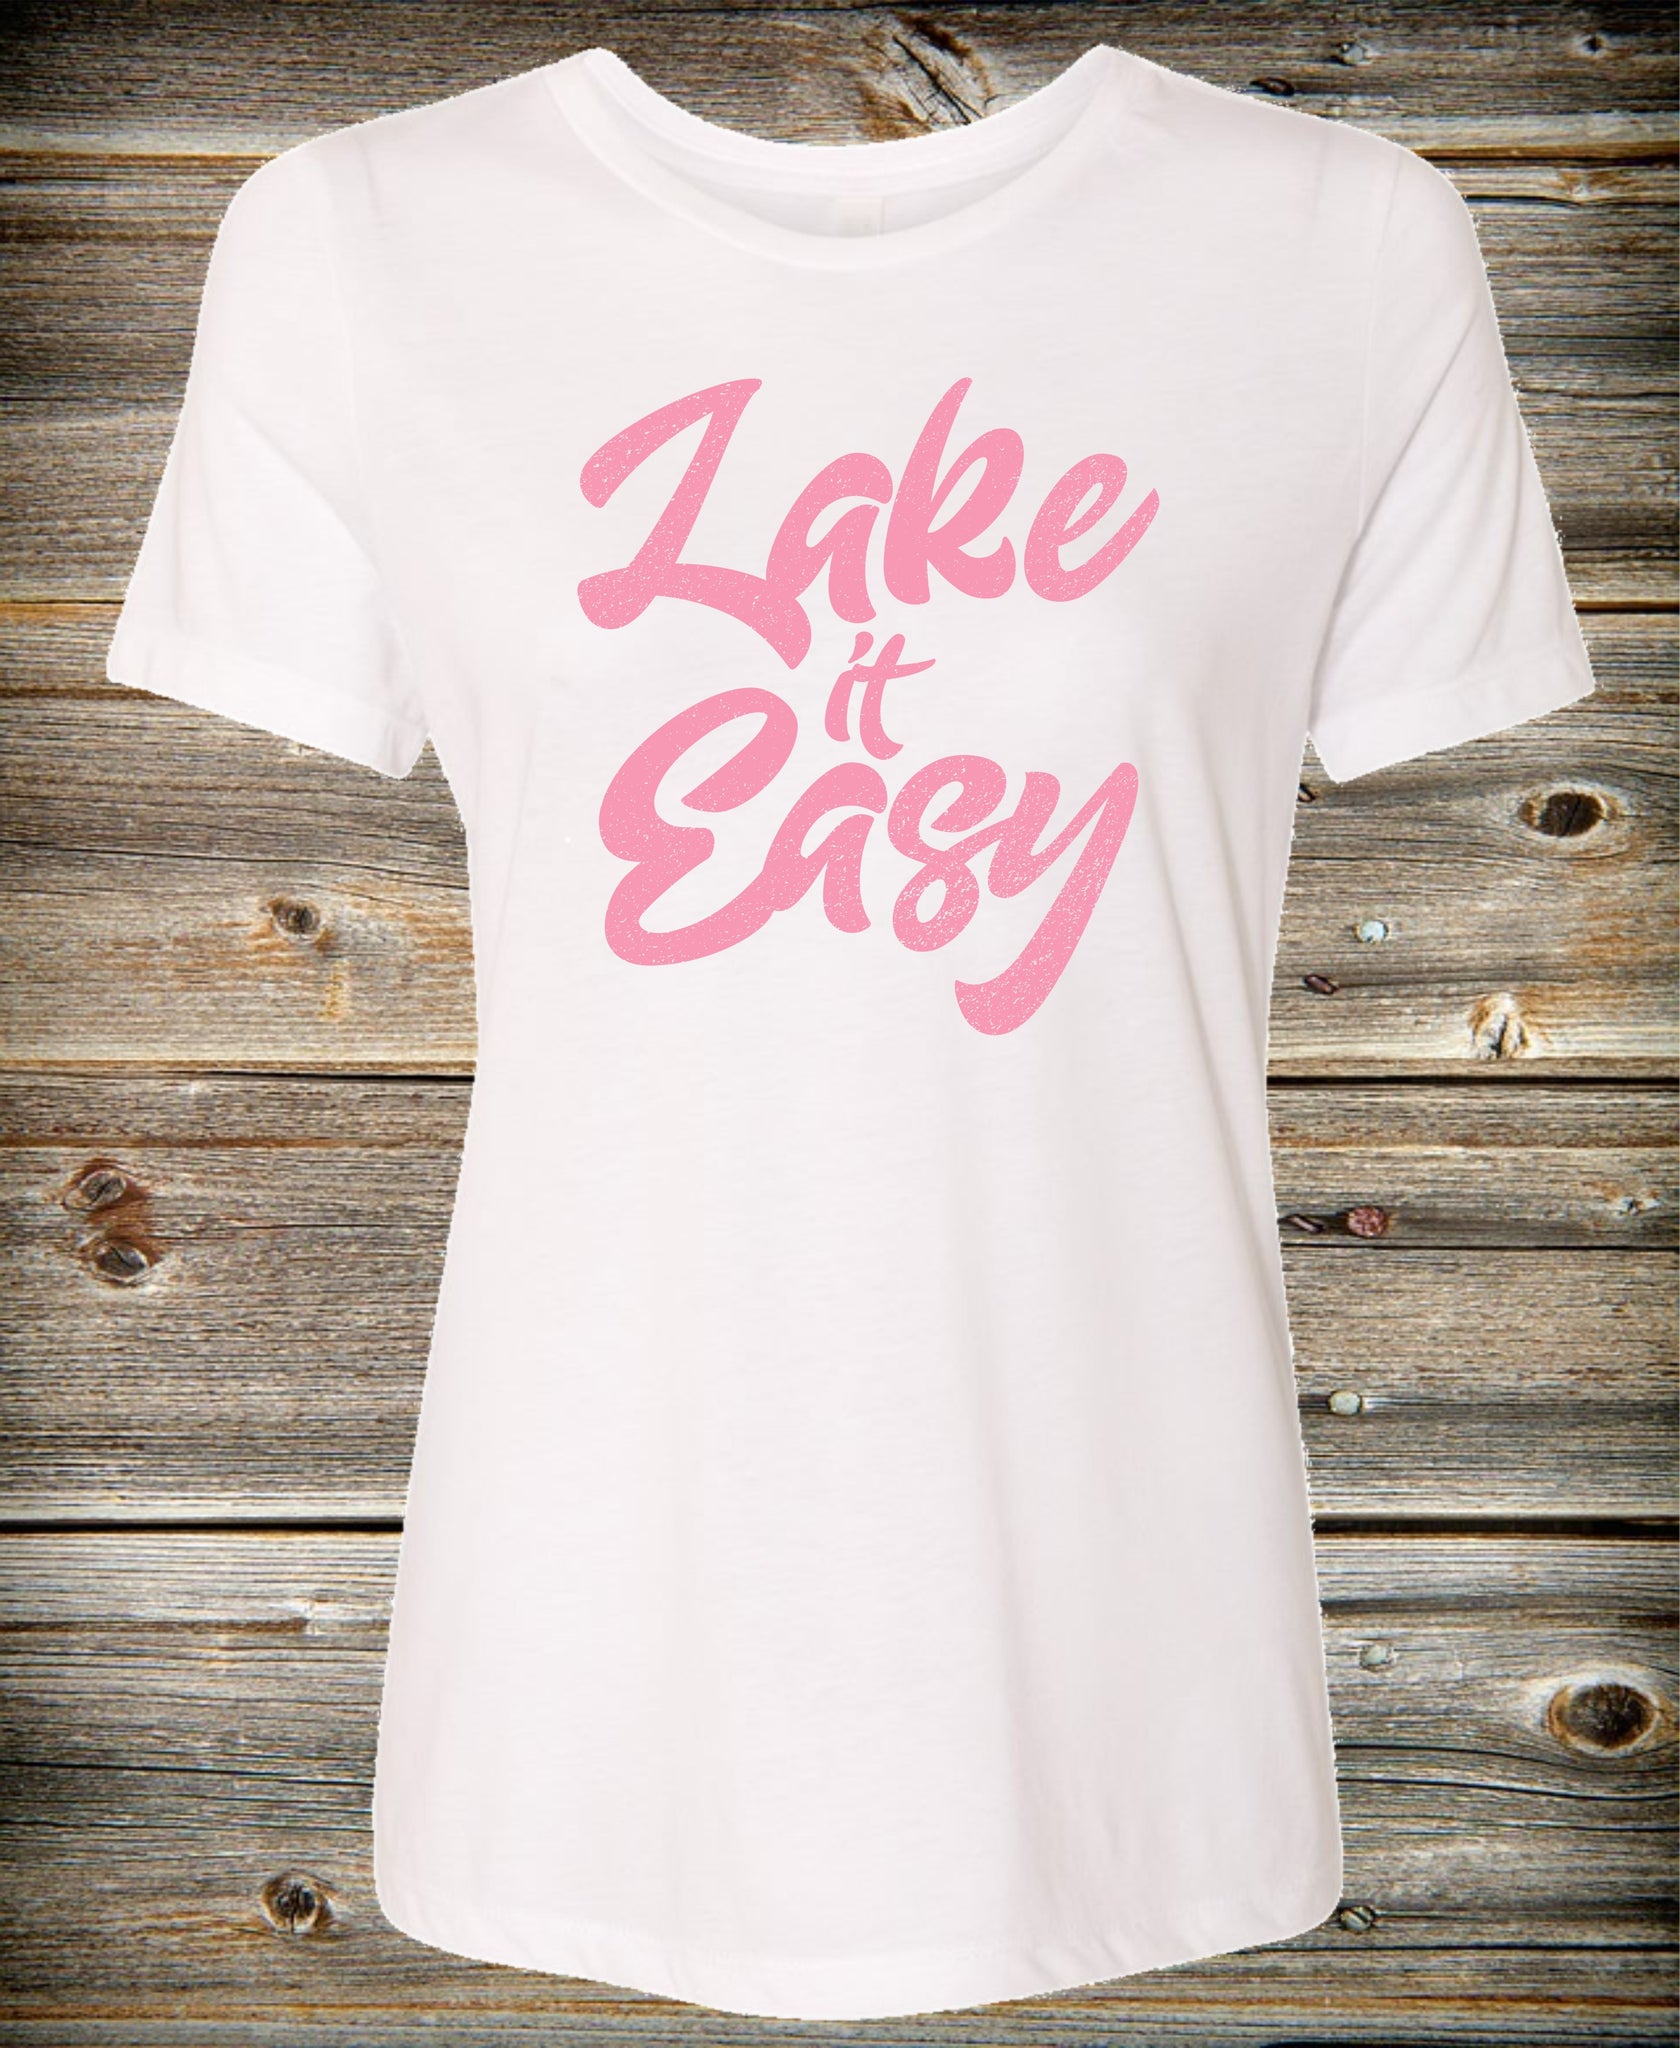 "Lake it Easy" Ladies Tee